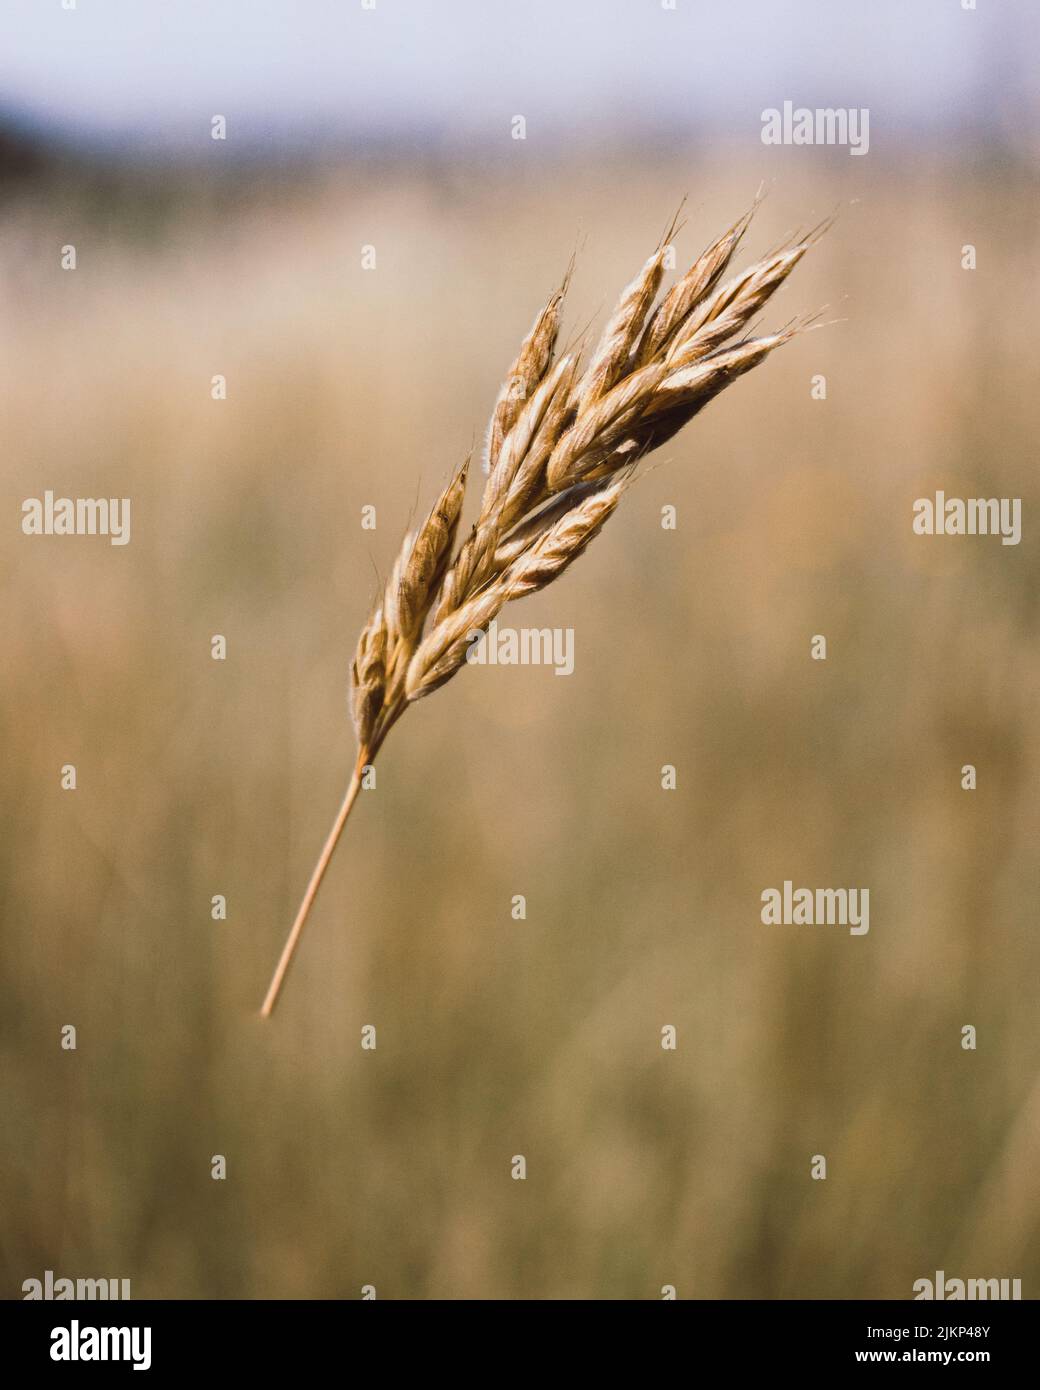 Ein flacher Fokus von einem Weizenspieß, der an einem sonnigen Tag auf dem Feld wächst, mit verschwommenem Hintergrund Stockfoto